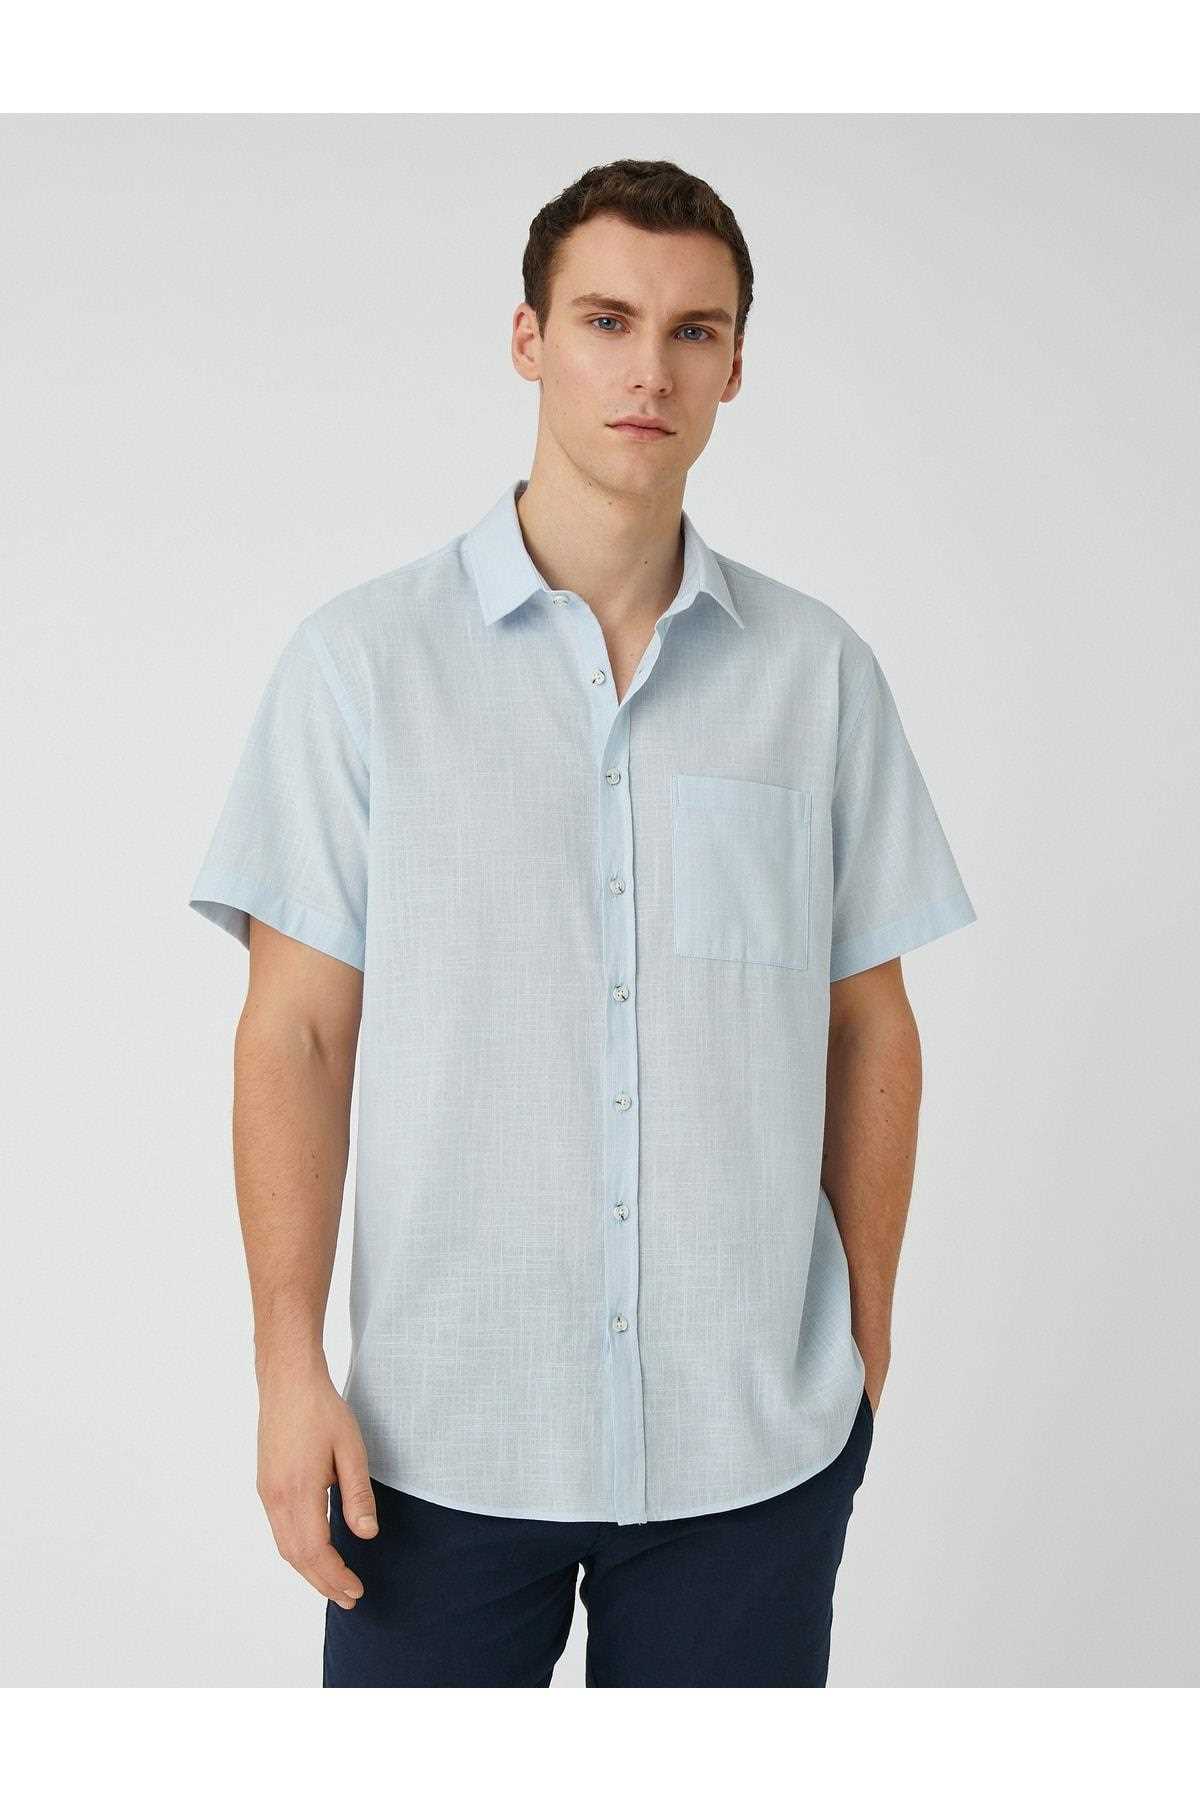 پیراهن آستین کوتاه مردانه از ارزانیه شیک Koton سرمه ای ty465343052